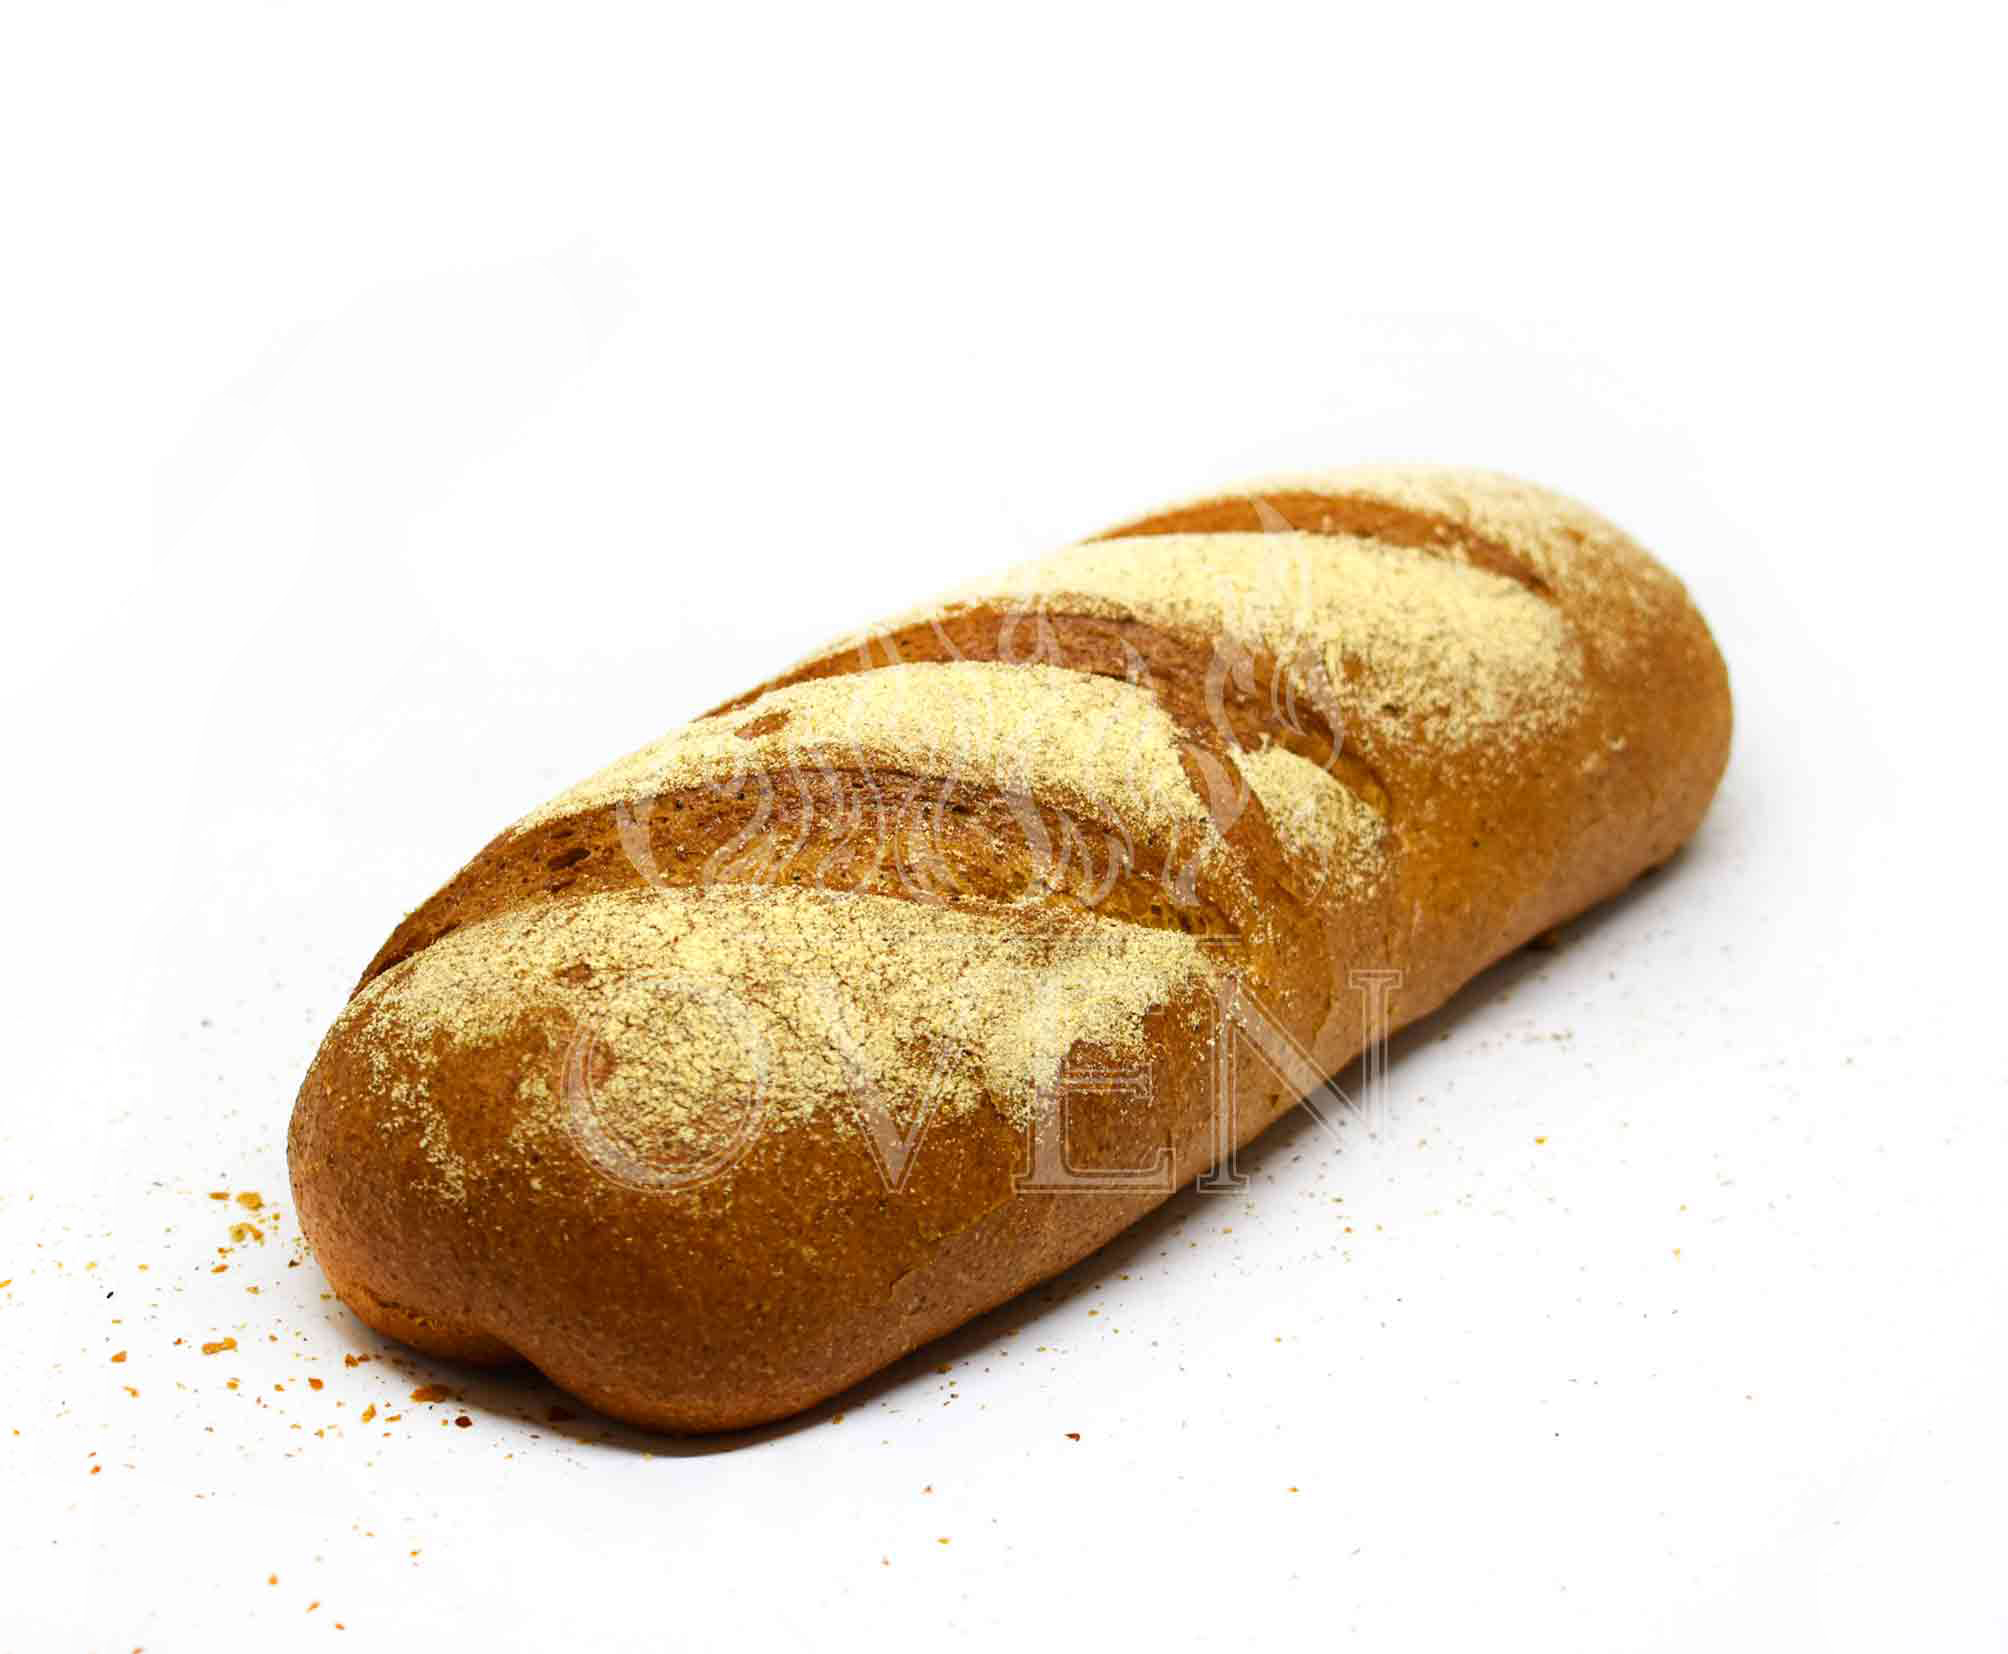 Munchen bread